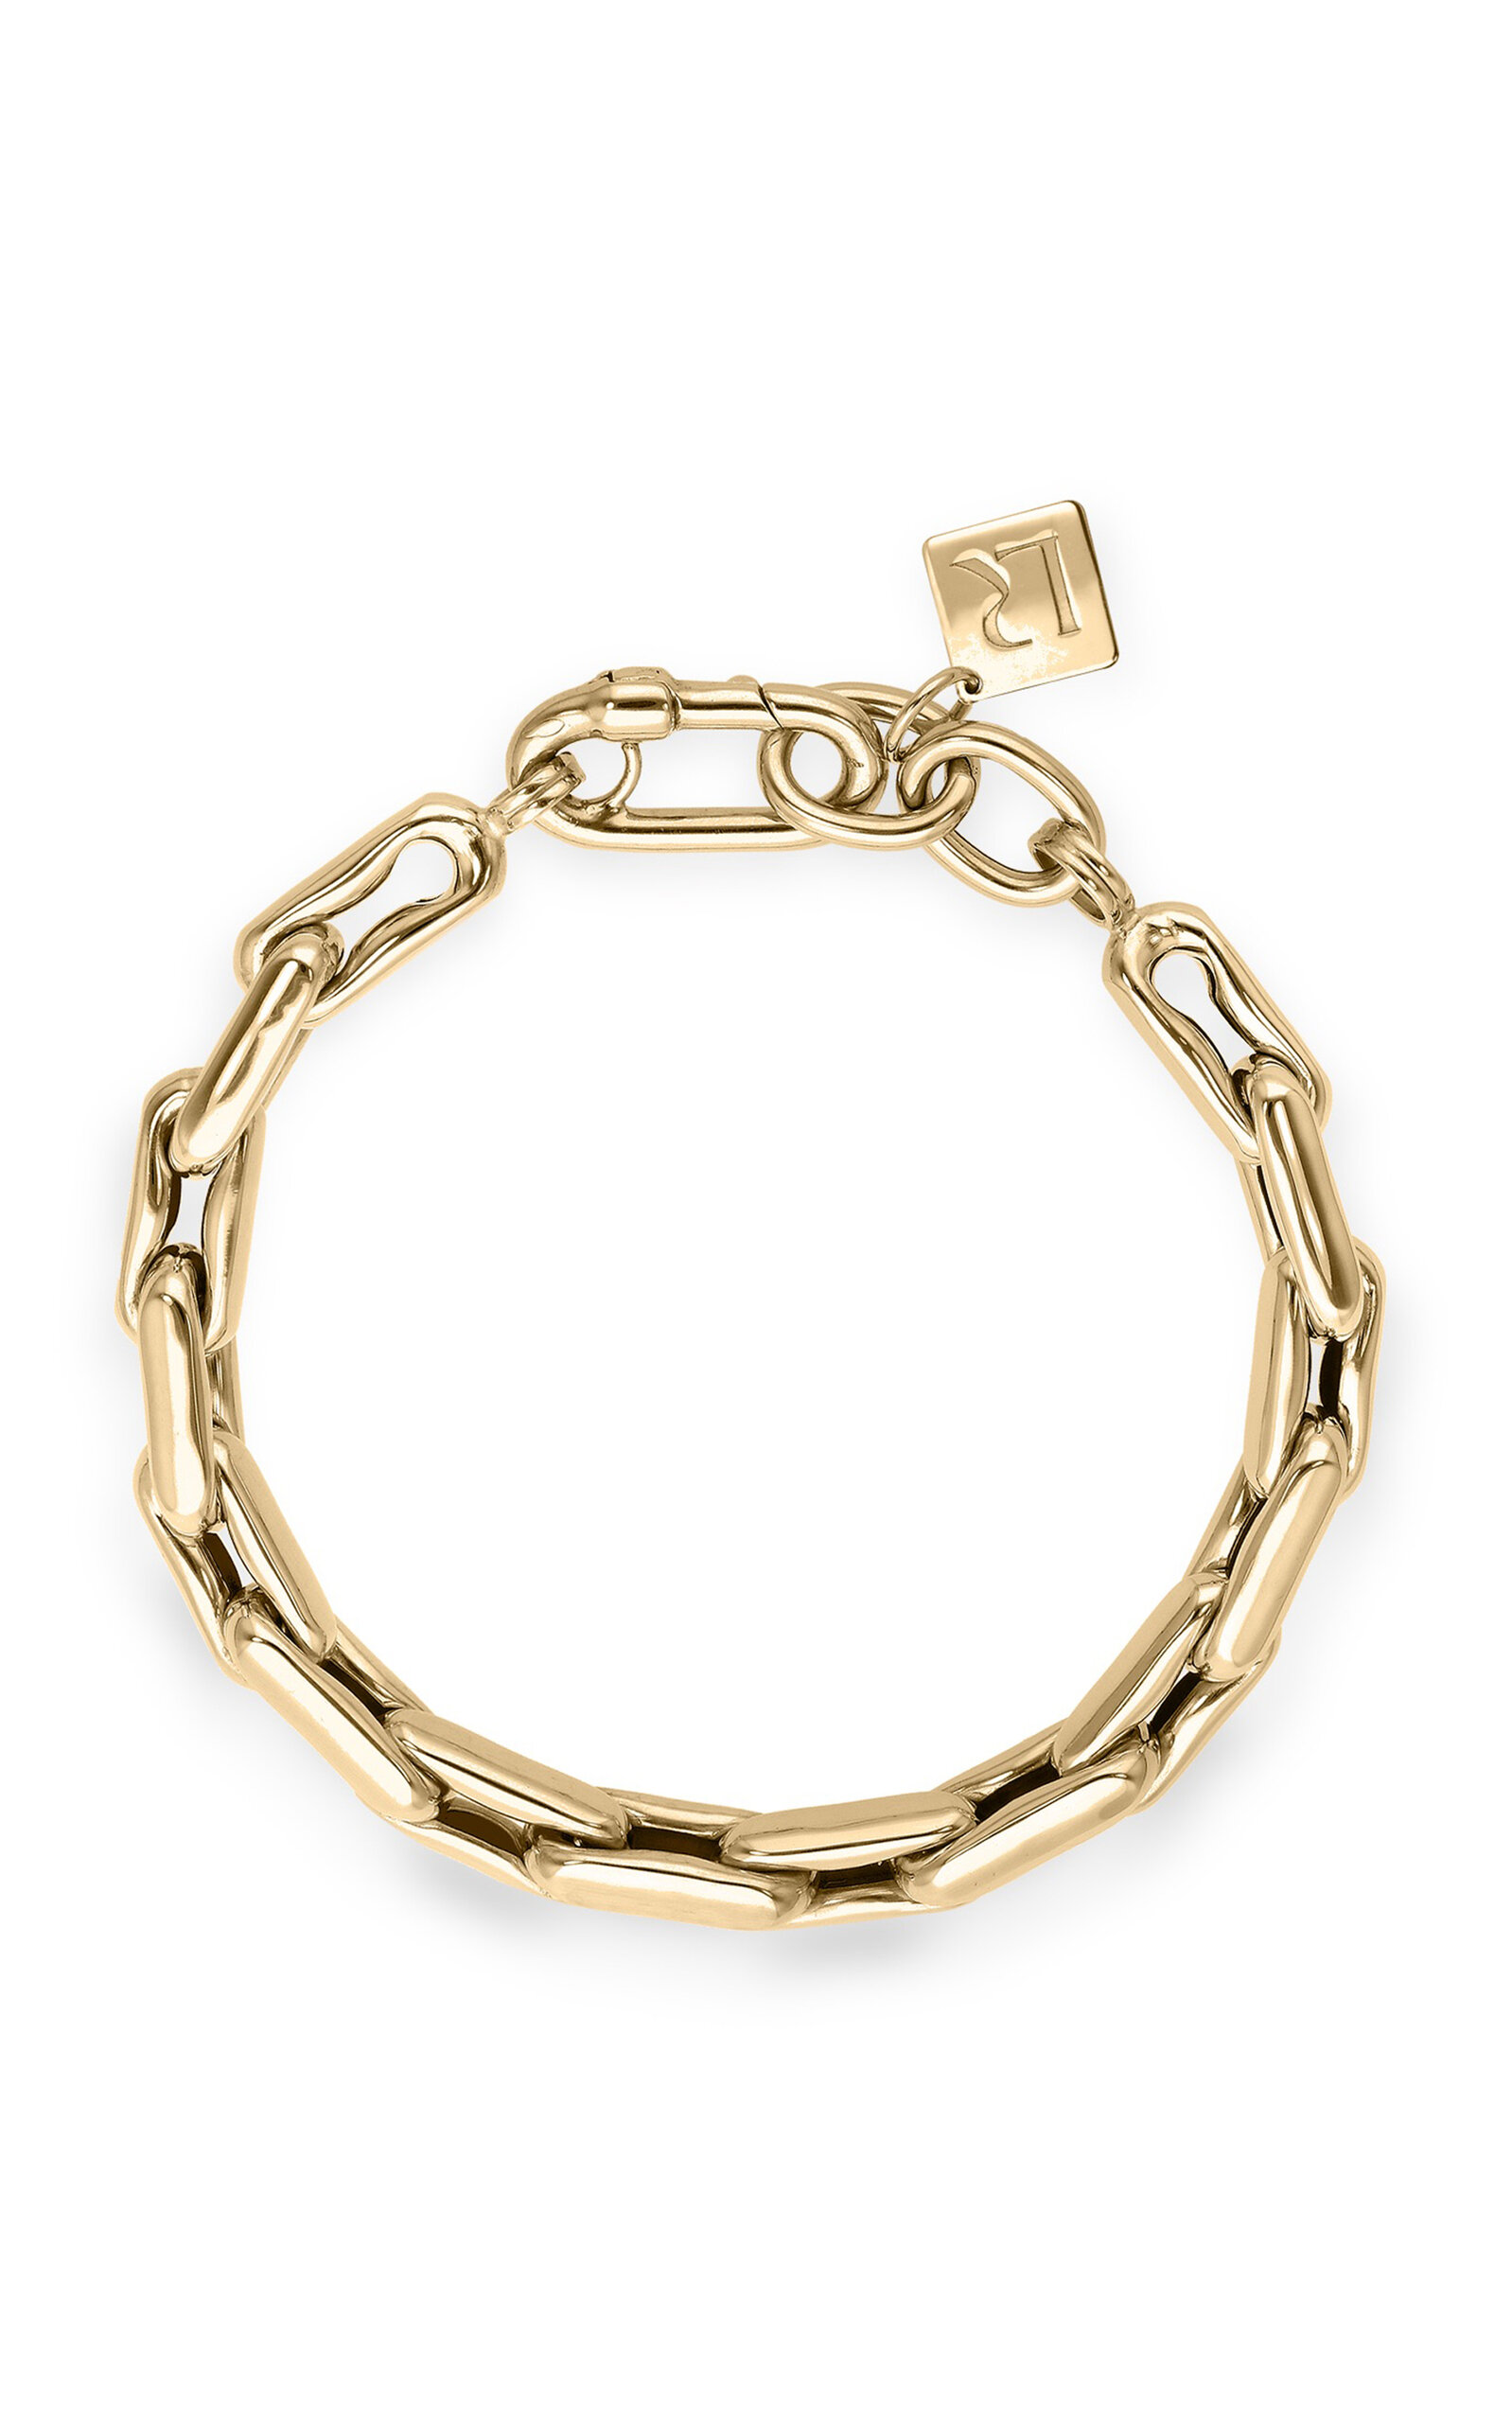 Lauren Rubinski Extra Small 14k Yellow Gold Bracelet